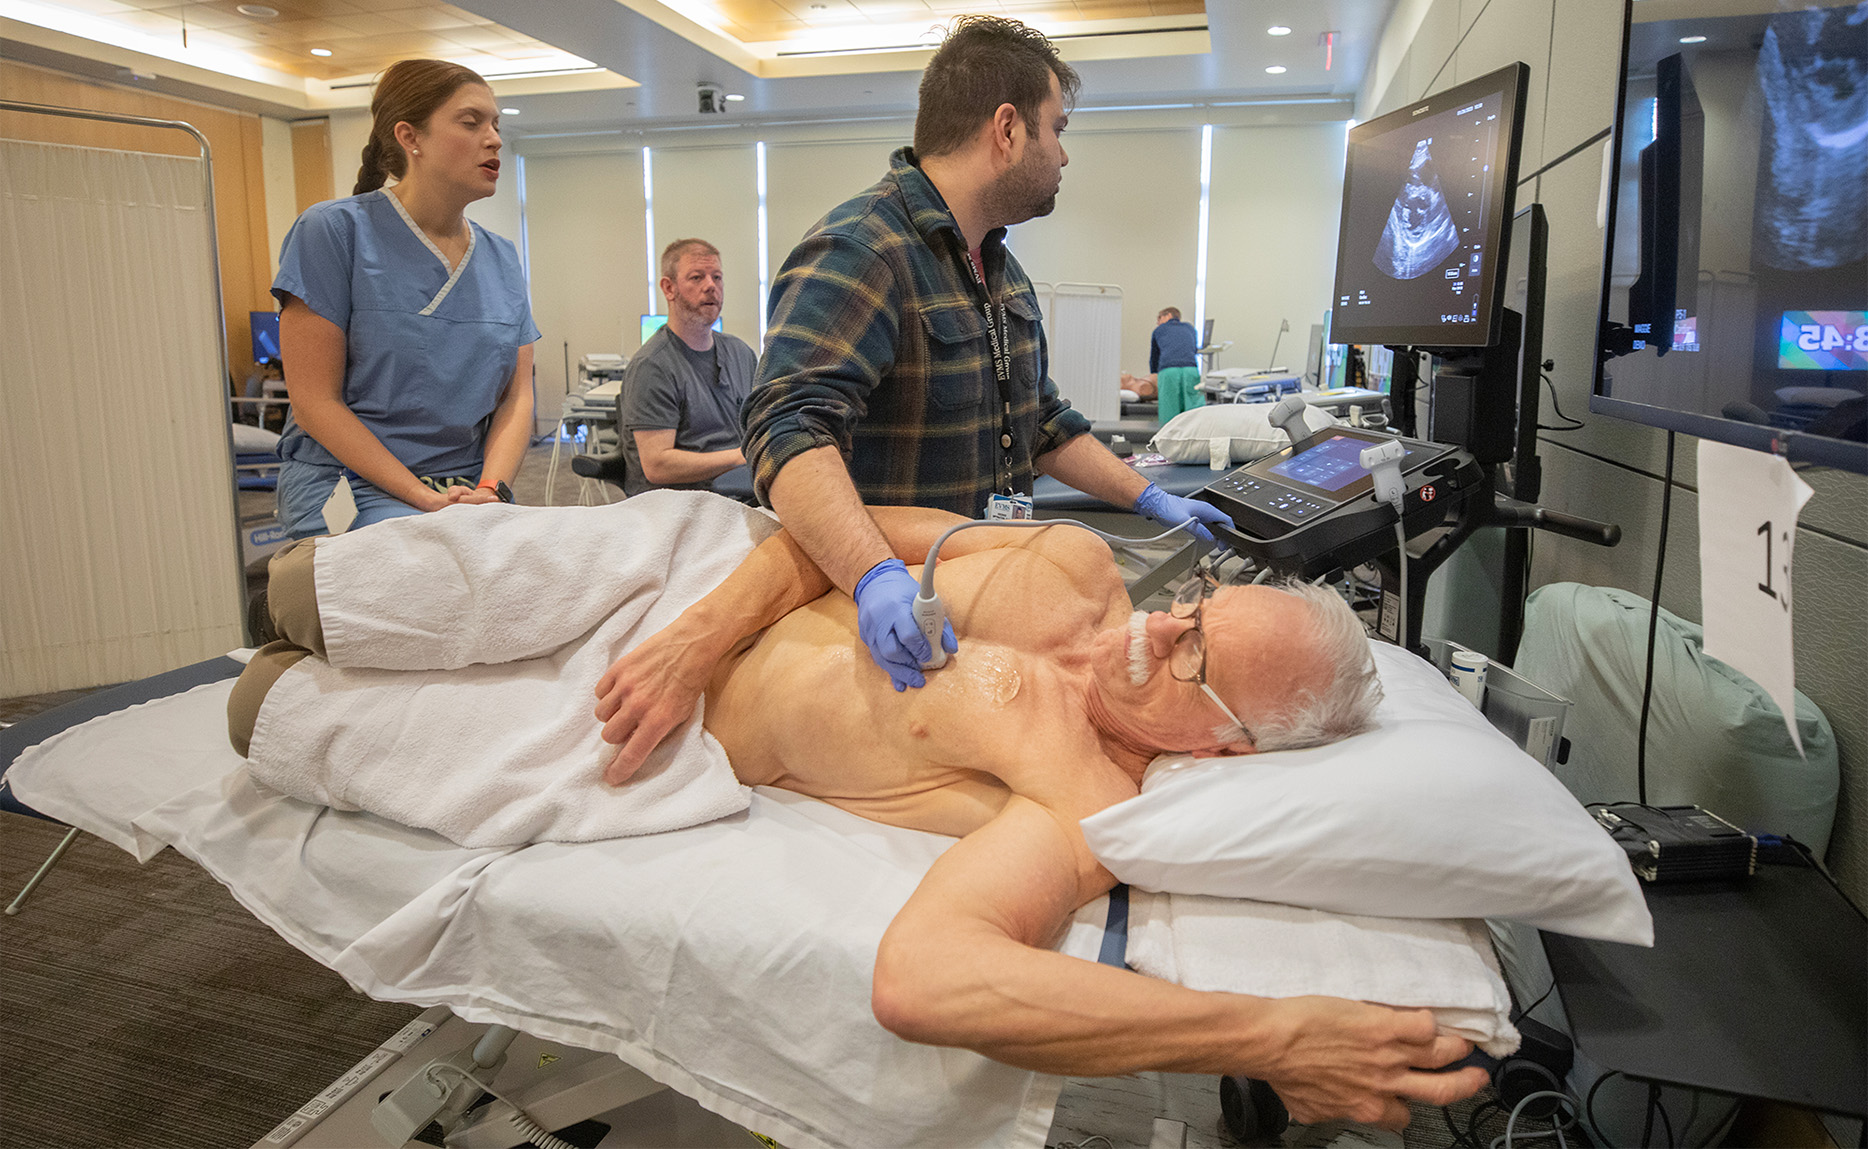 Patient on his side receiving ultrasound procedure